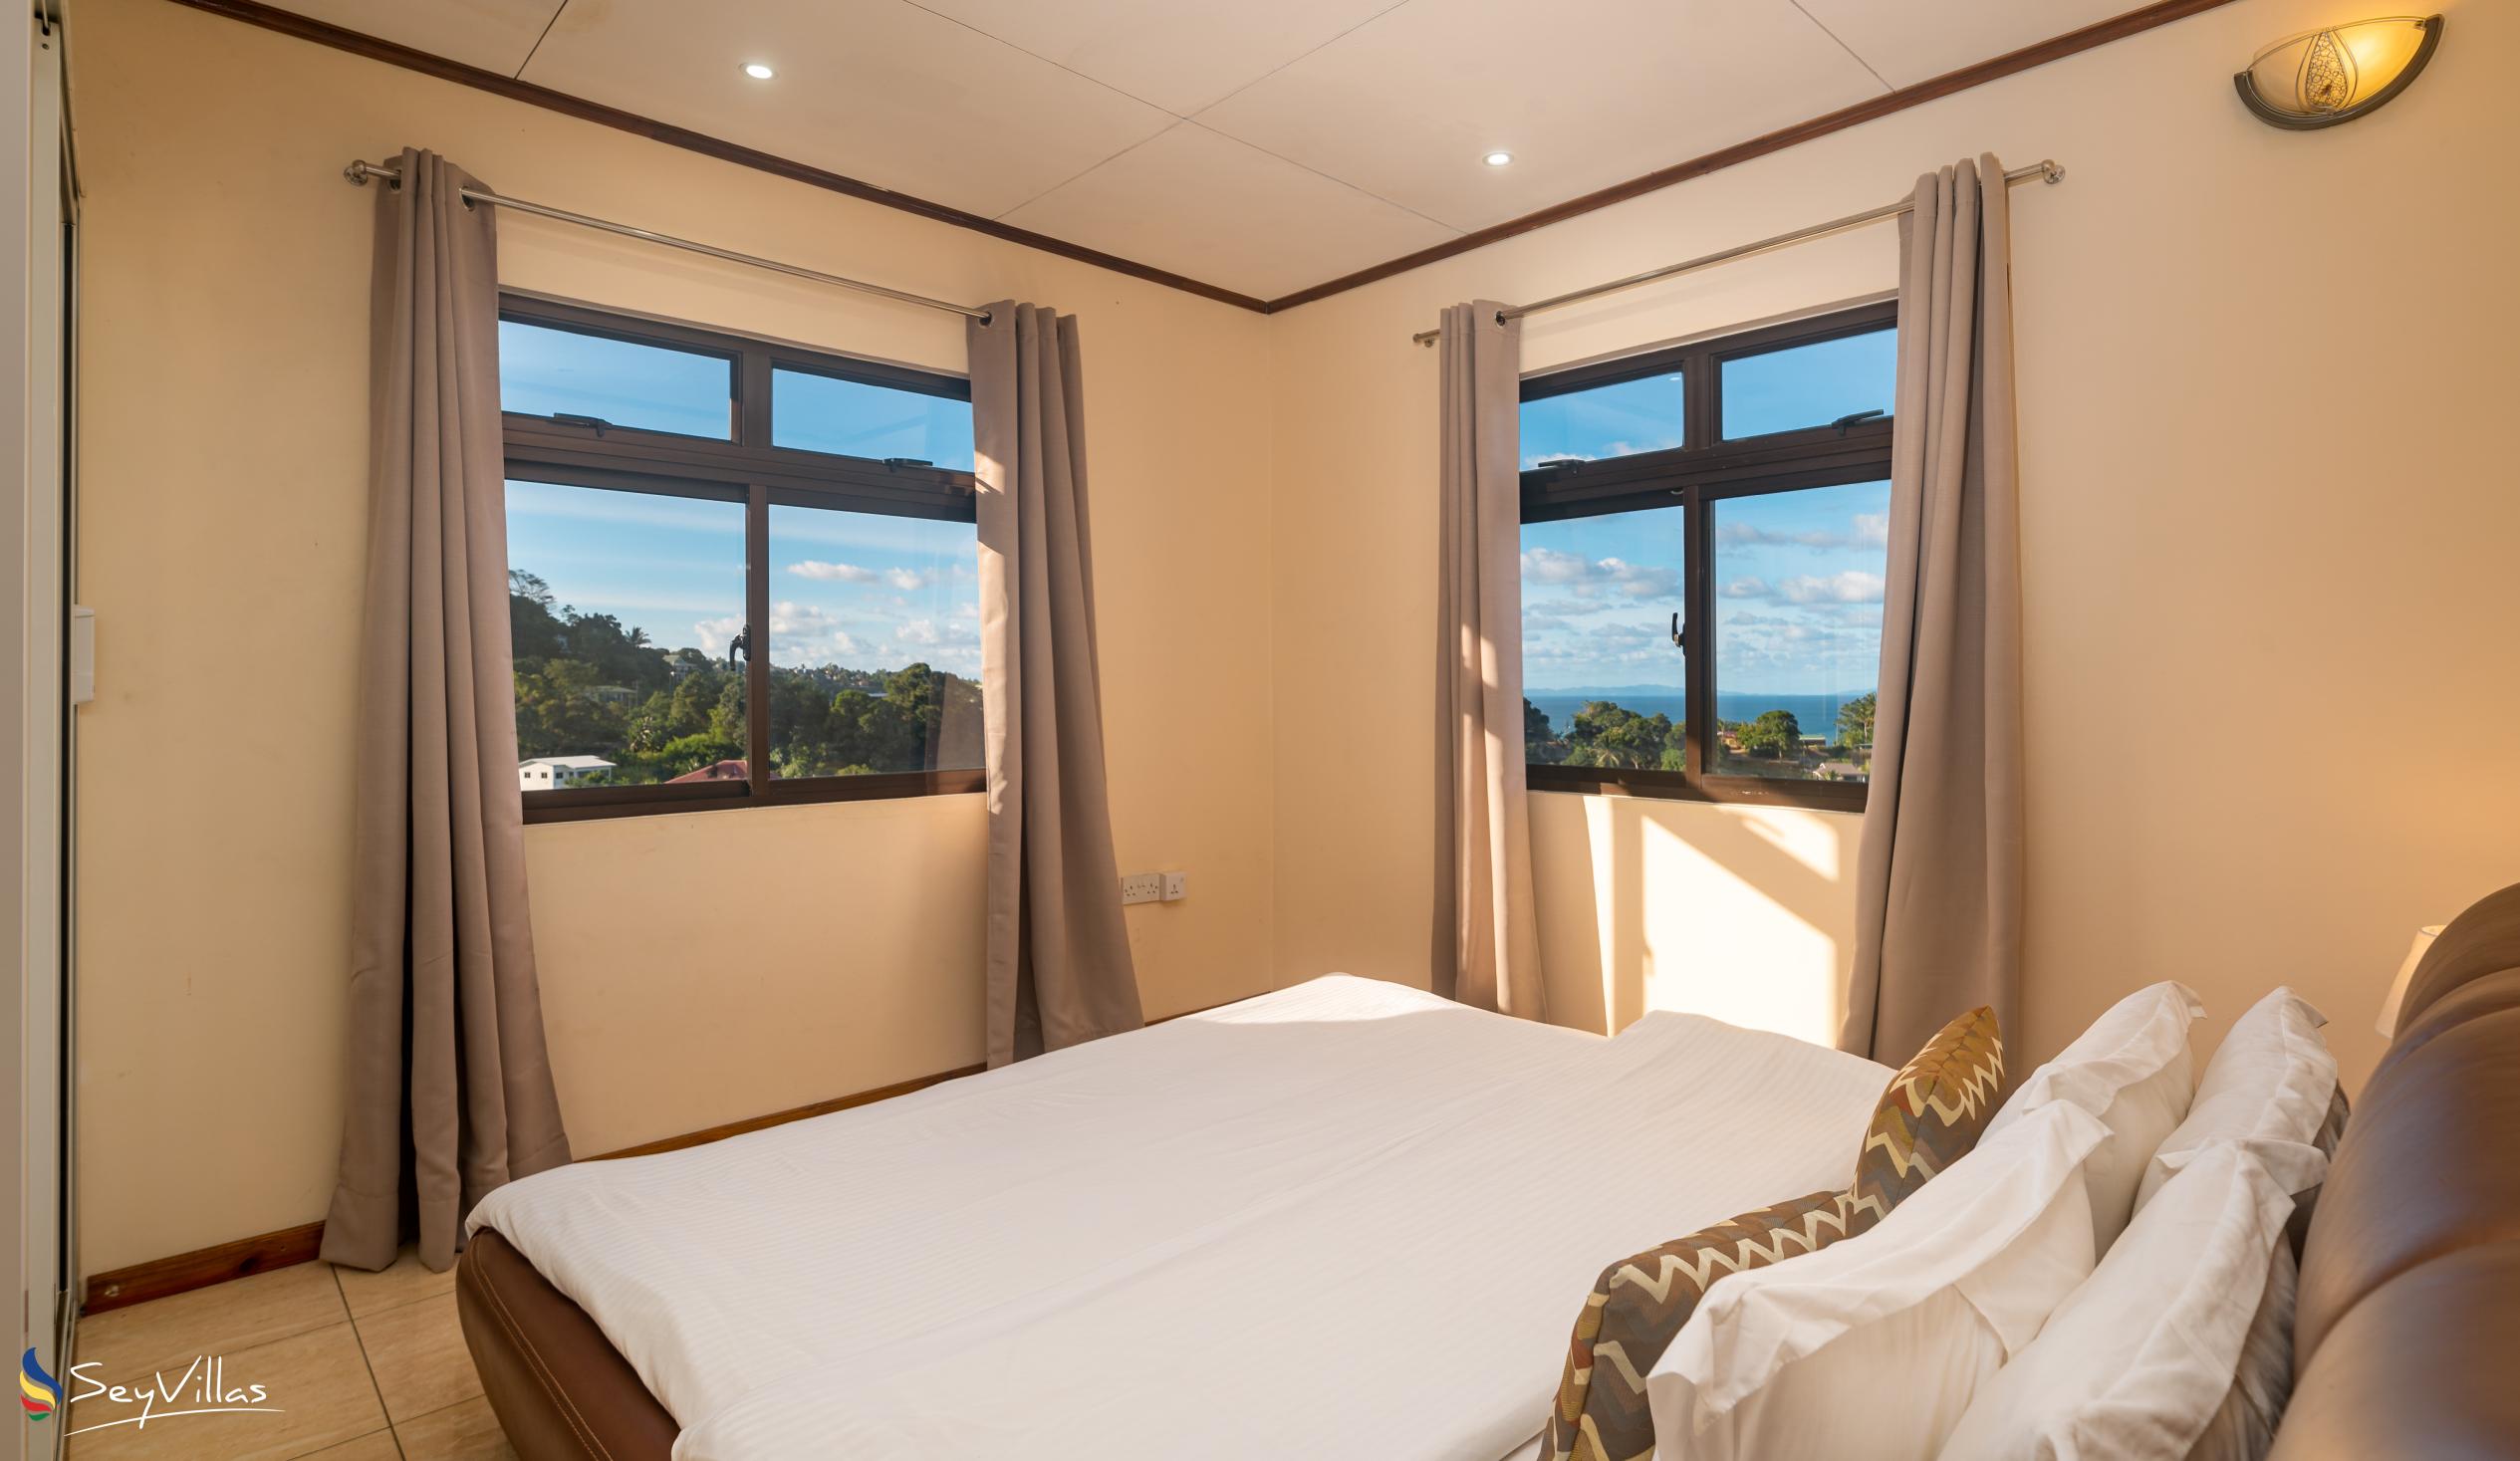 Foto 46: Maison L'Horizon - Appartement 2 chambres Soley - Mahé (Seychelles)